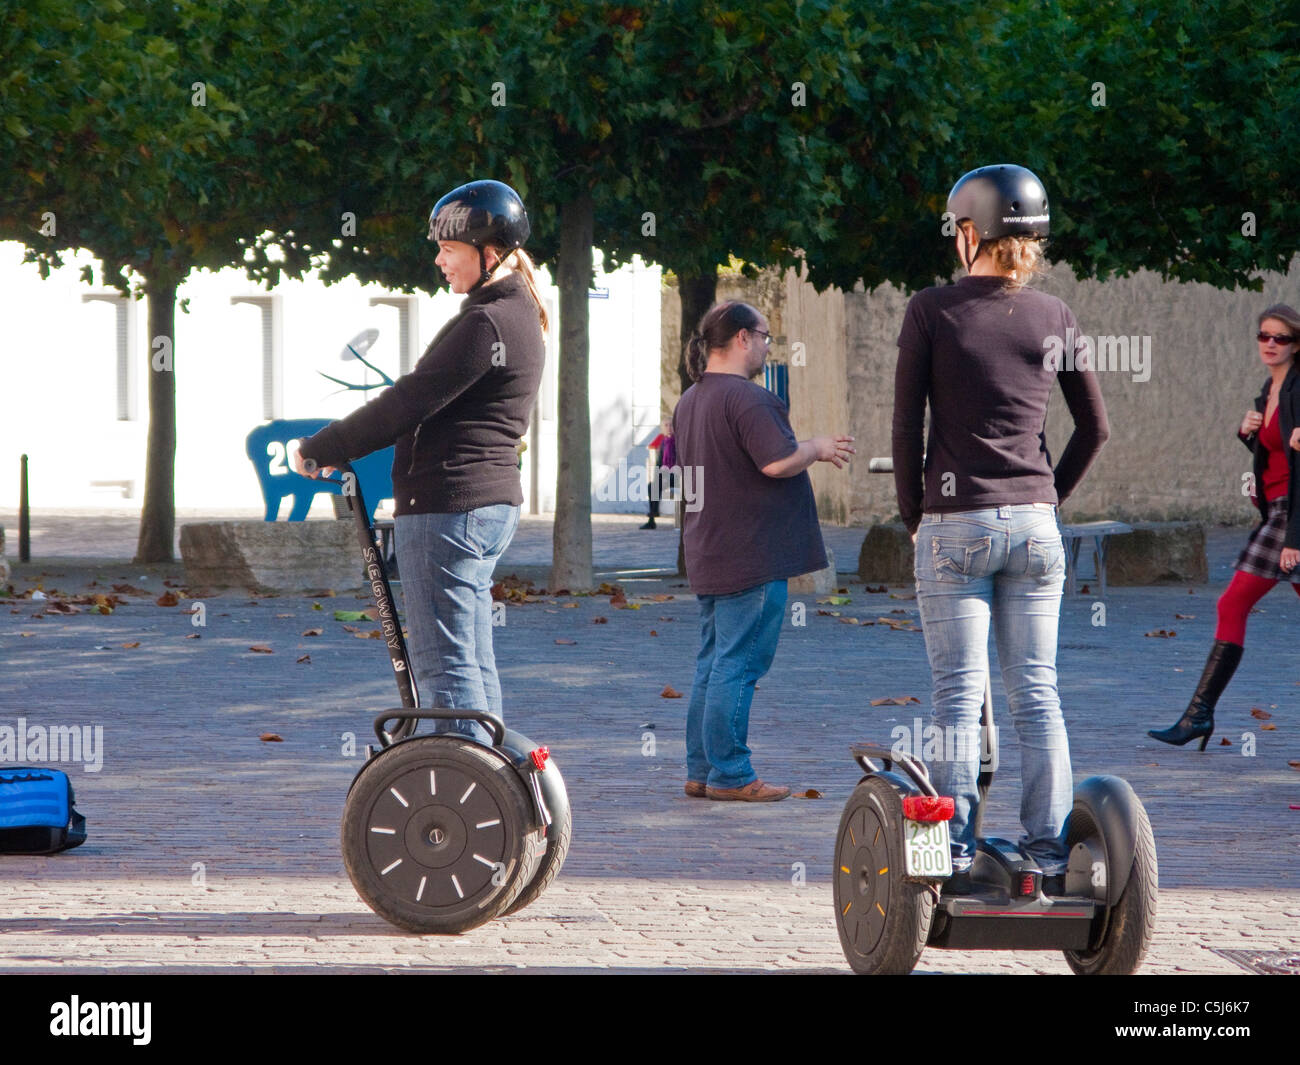 Segwayfahrer, Segway PT ist eine Erfindung von Dean Kamen, Segway, gruppo di giovani, Treviri Foto Stock